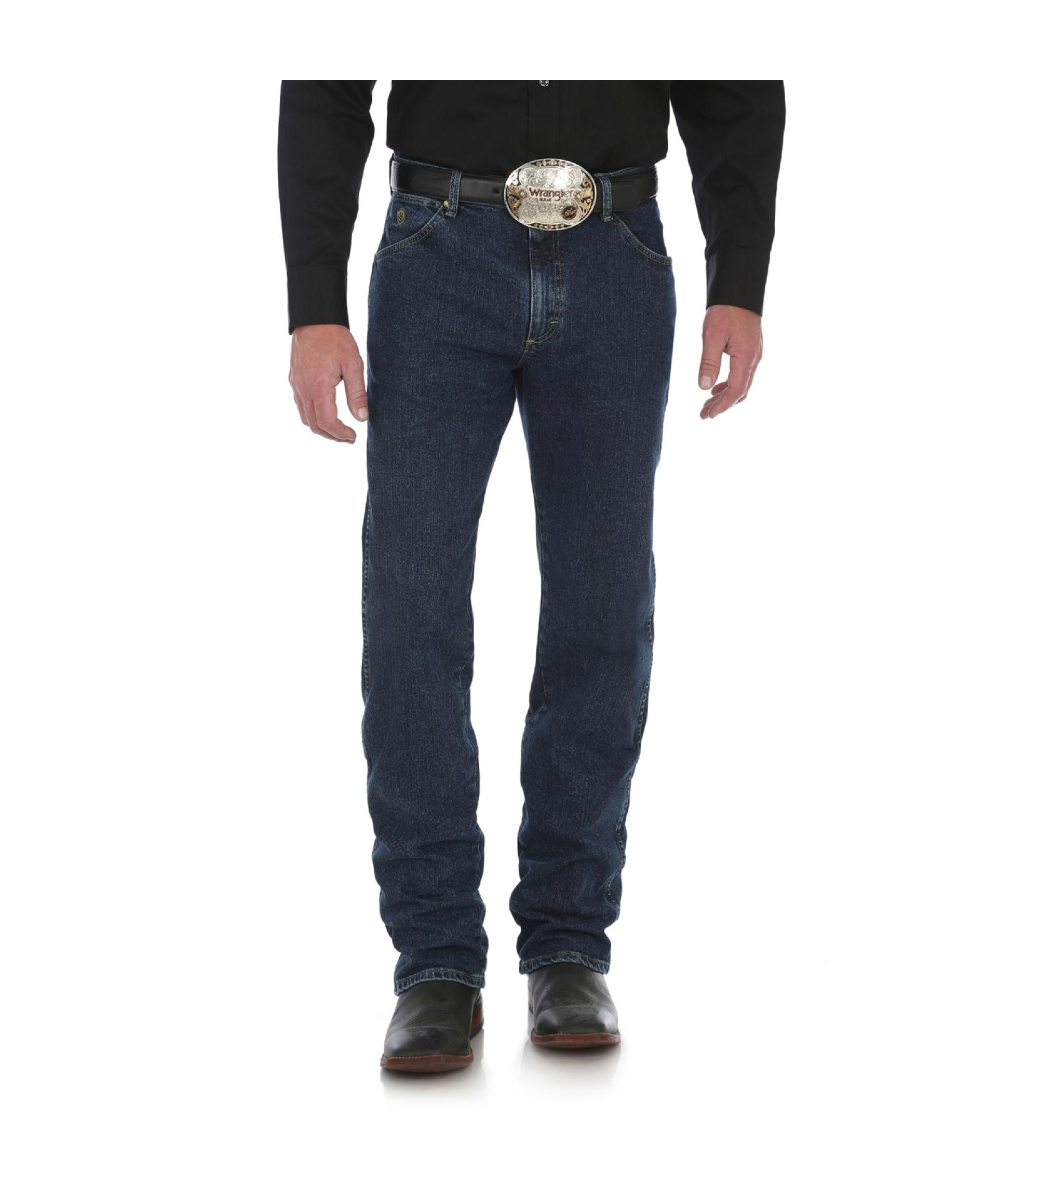 George Strait Cowboy Cut Jeans